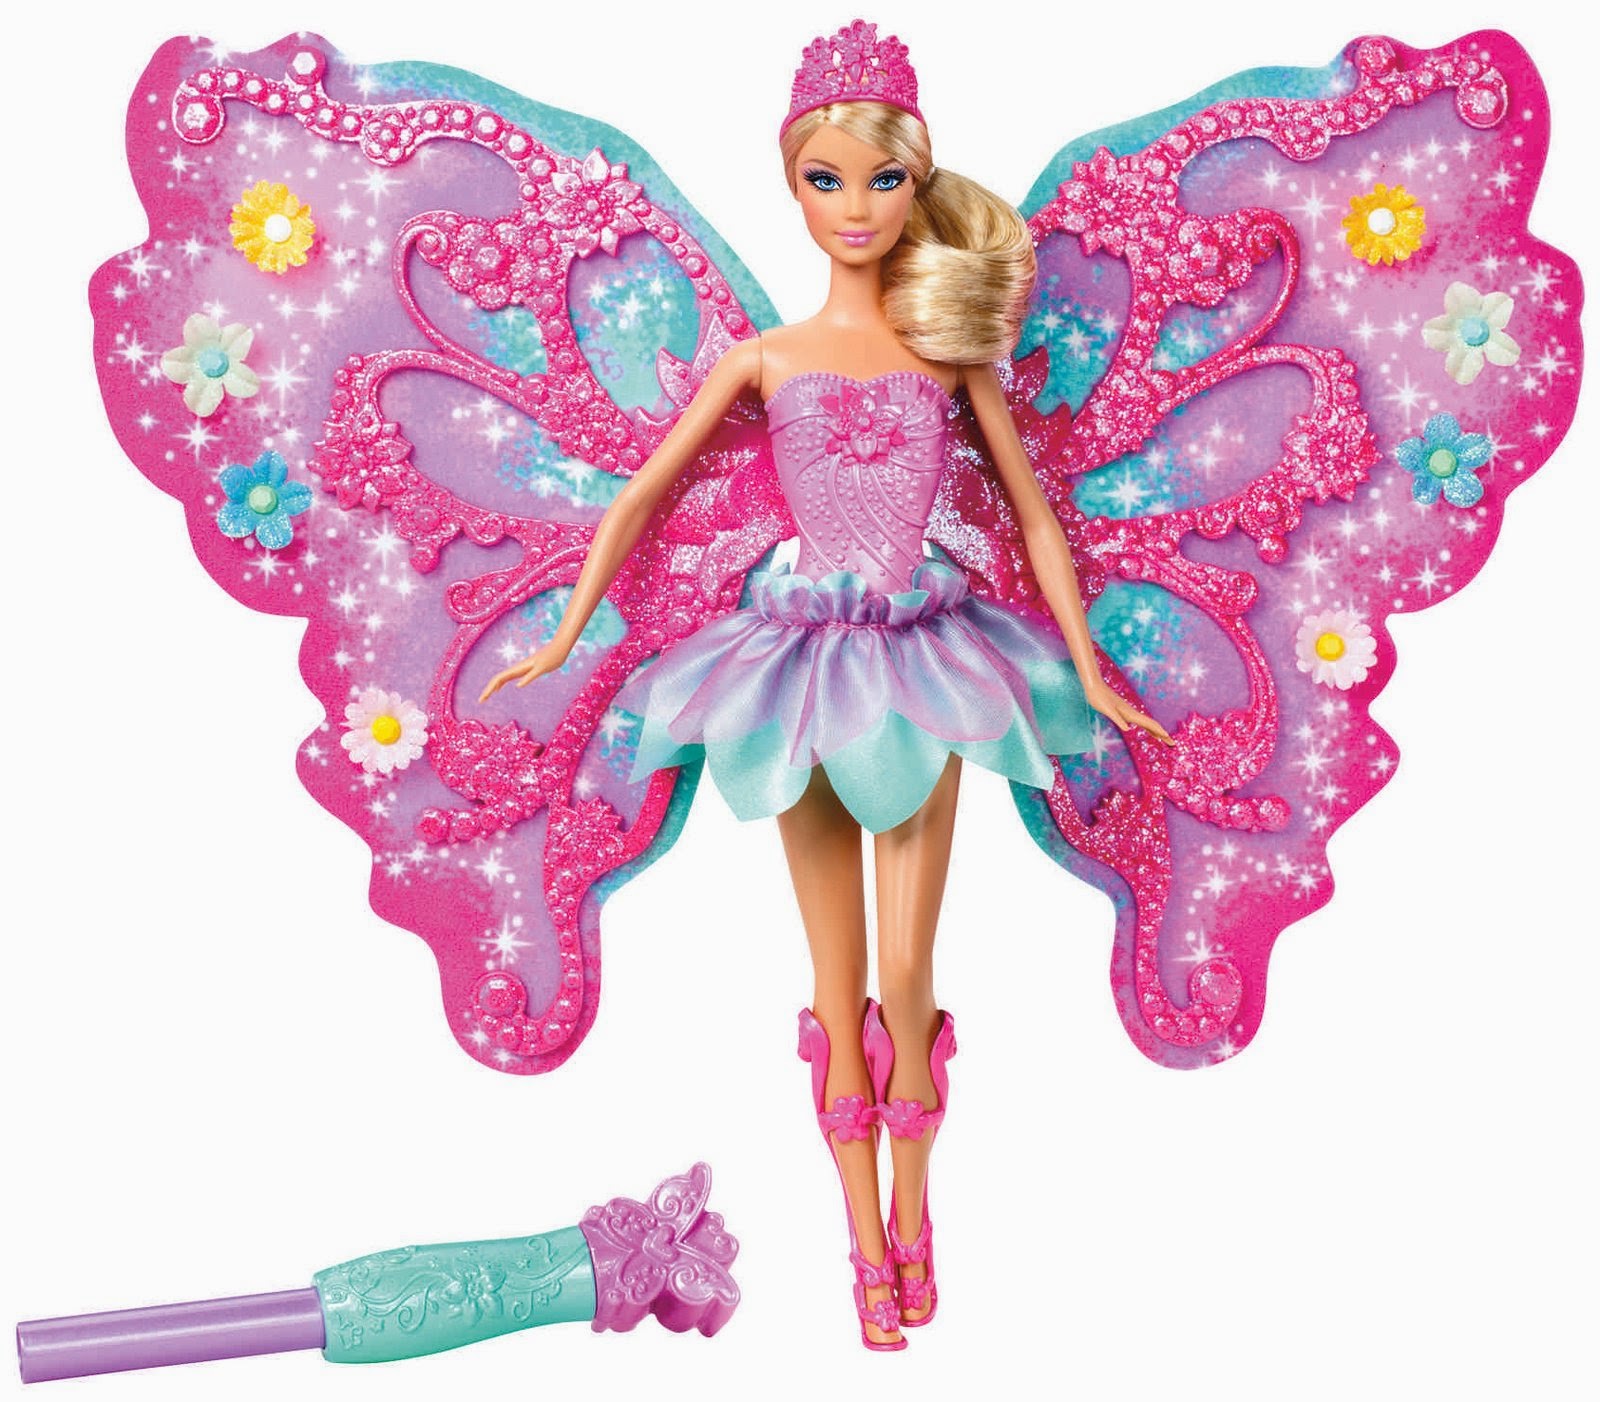 Kumpulan Gambar Boneka Barbie Cantik Dan Lucu Terbaru Untuk Anak